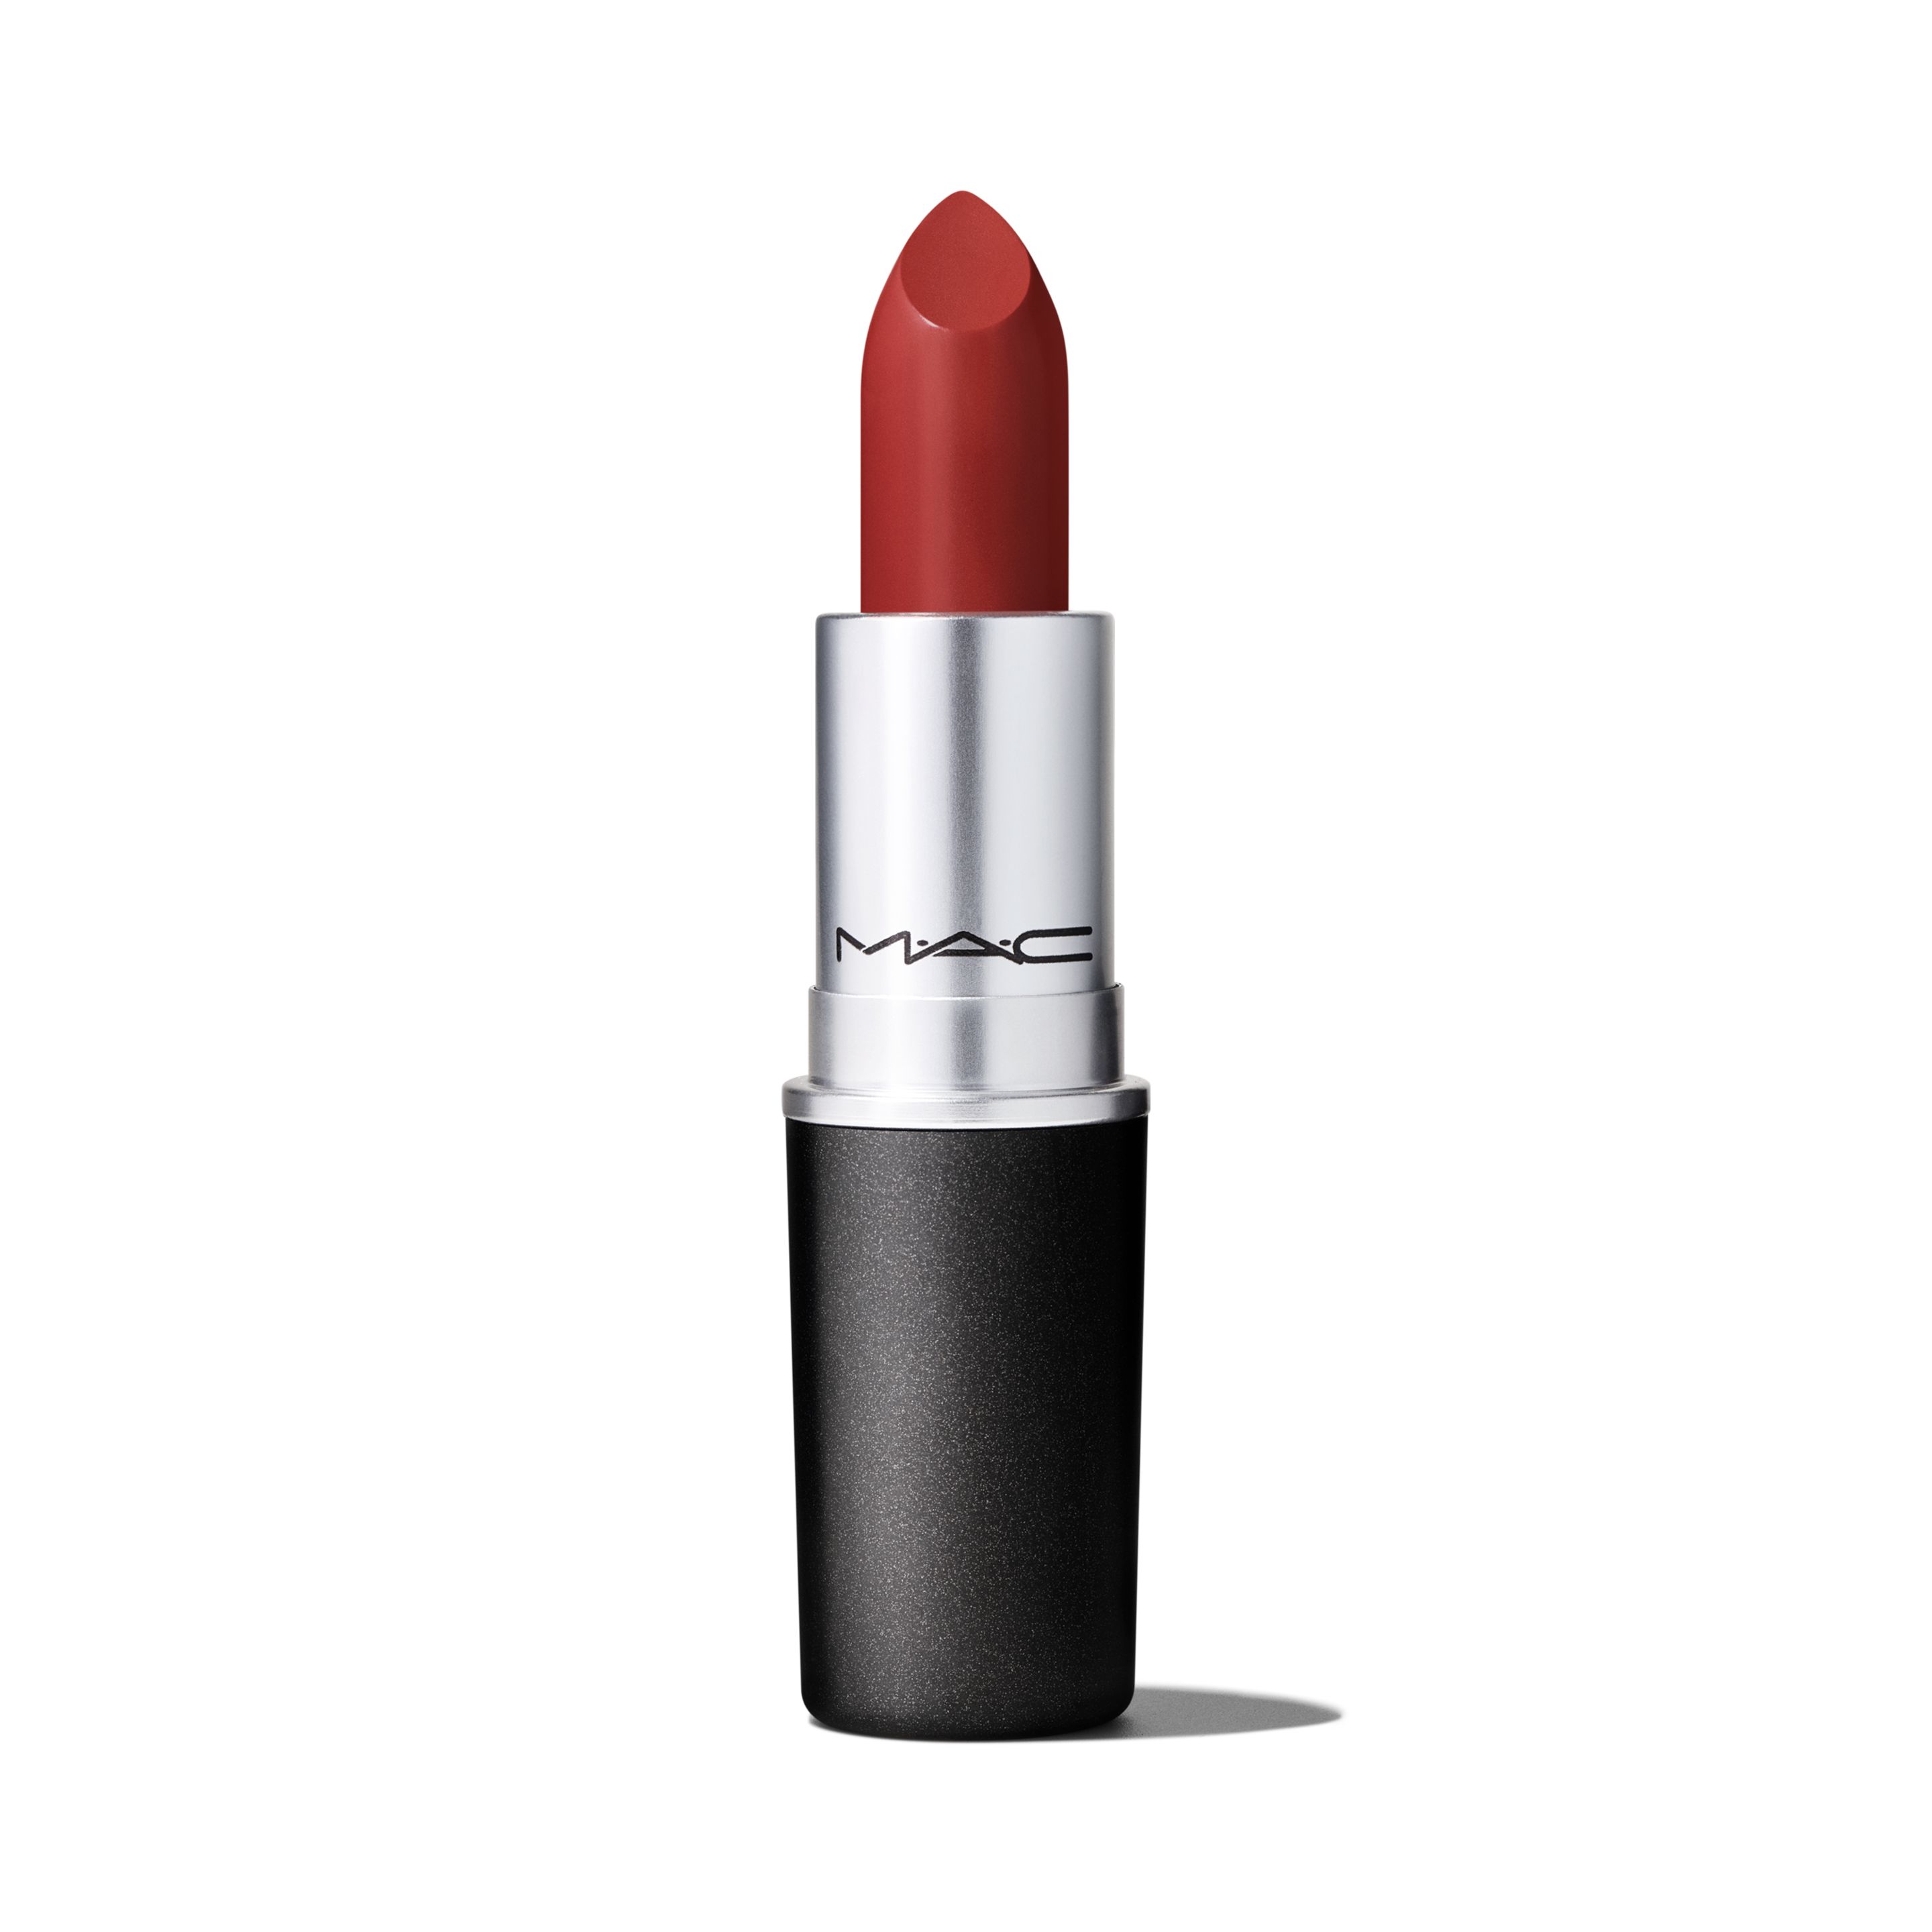 Помада для губ MAC Lipstick Amplified Creme кремовая, тон Dubonnet, 3 г помада для губ mac cosmetics satin lipstick кремовая тон twig 3 г